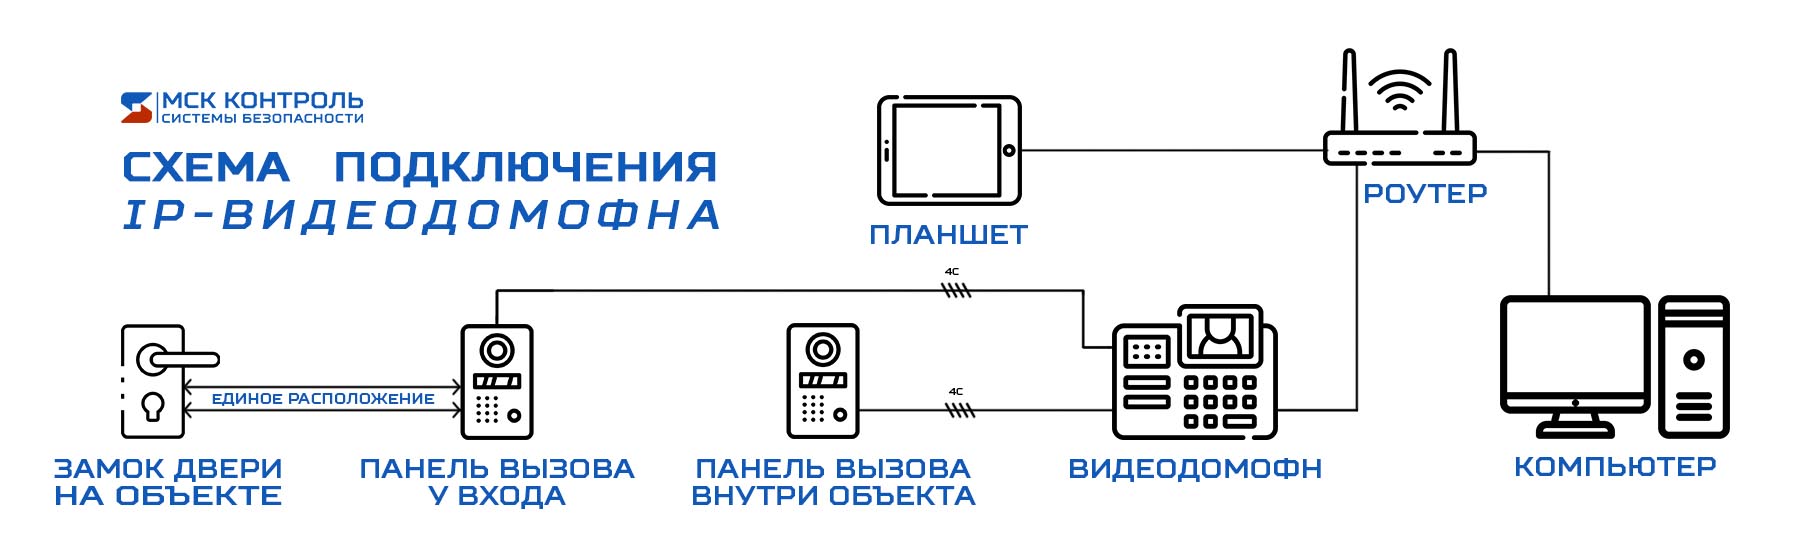 Схема работы IP видеодомофона